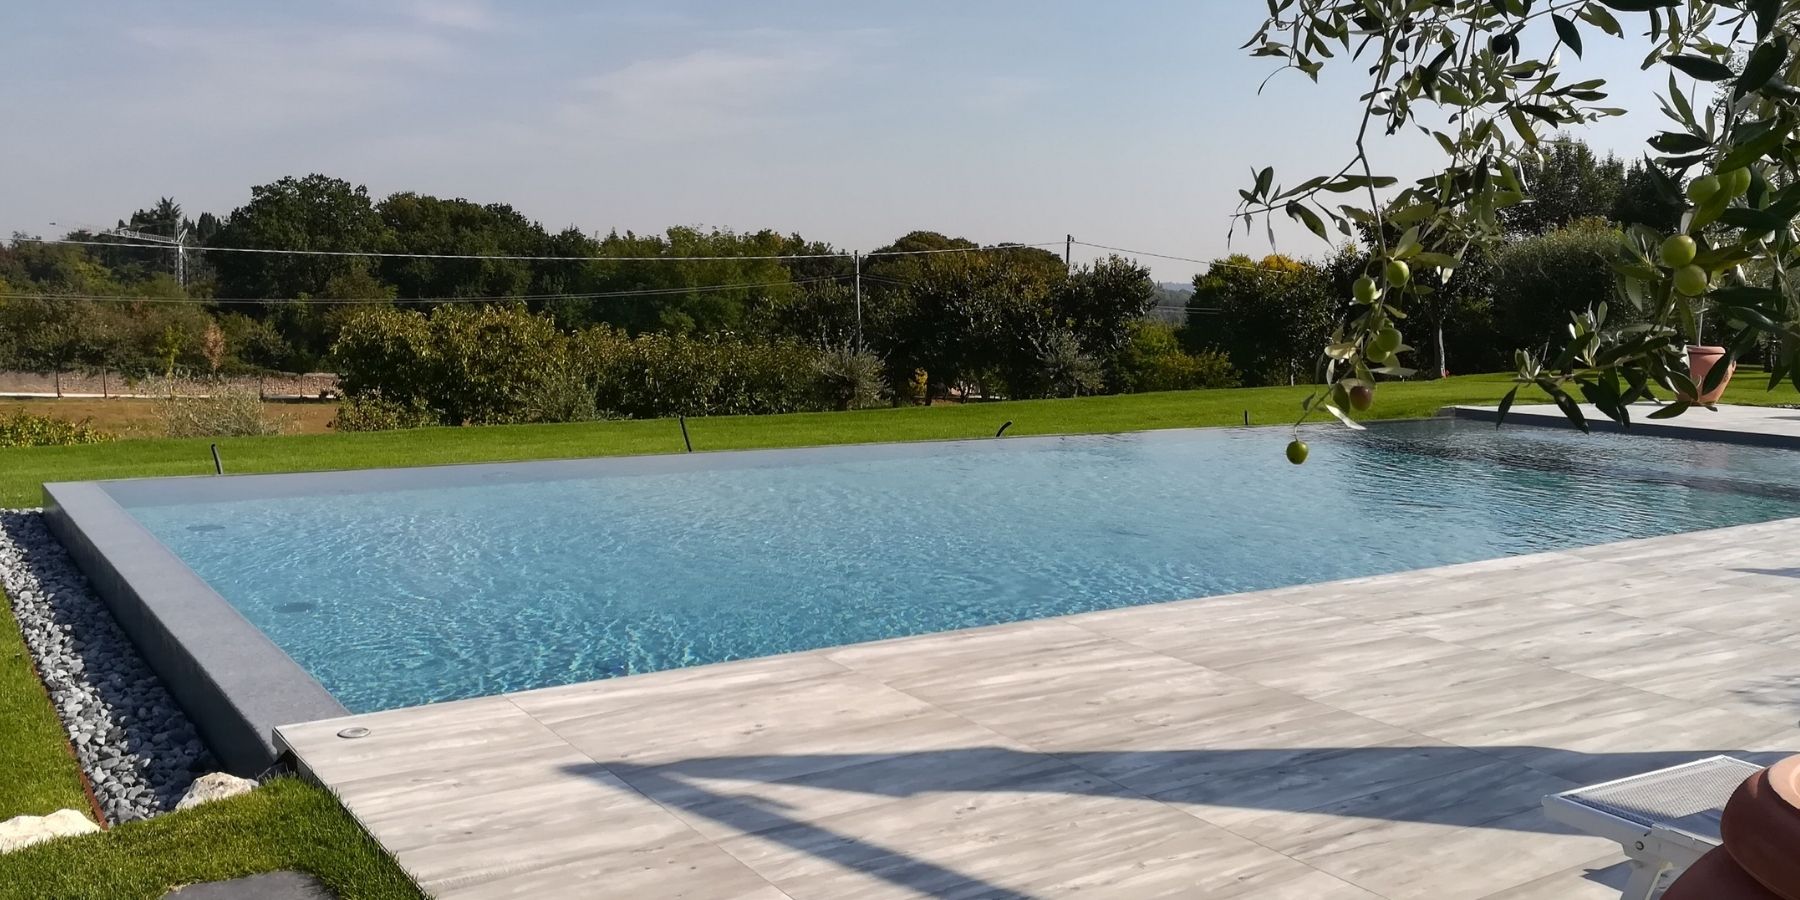 Realizzazione e progettazione piscina a sfioro a Verona